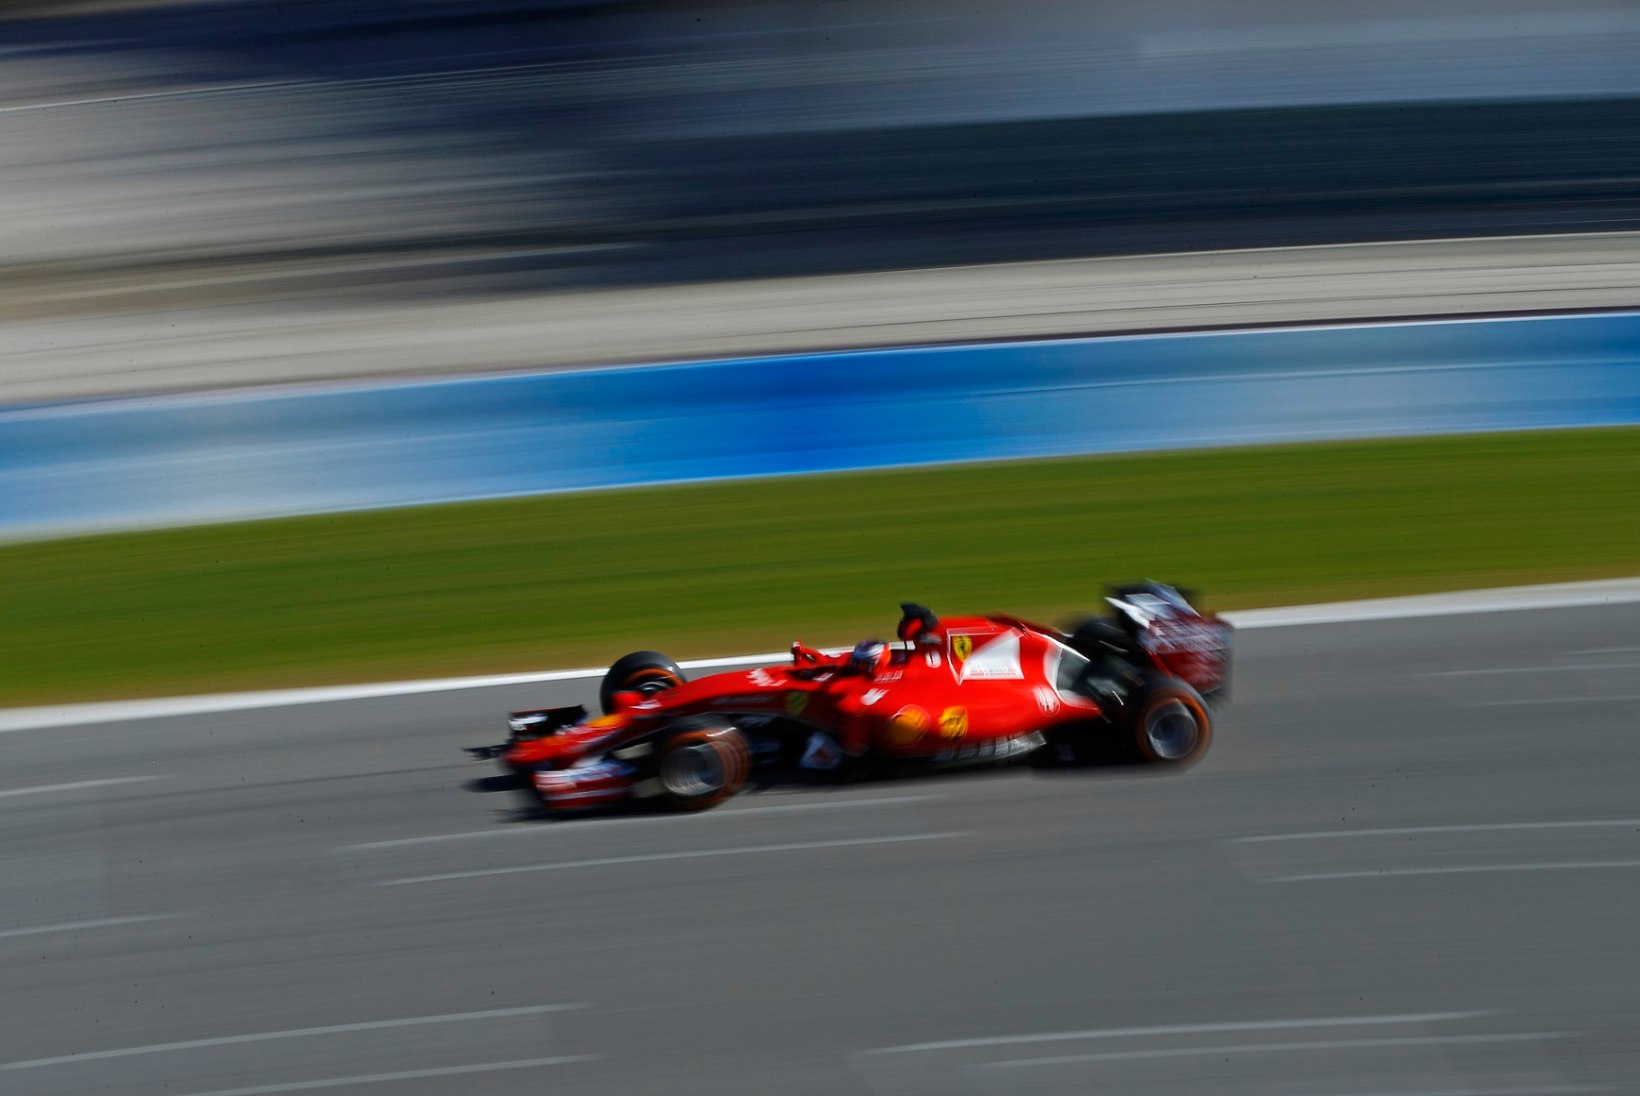 GALERII | Jerezi viimasel testipäeval kiireimat aega näidanud Räikkönen: see on ikkagi vaid algus